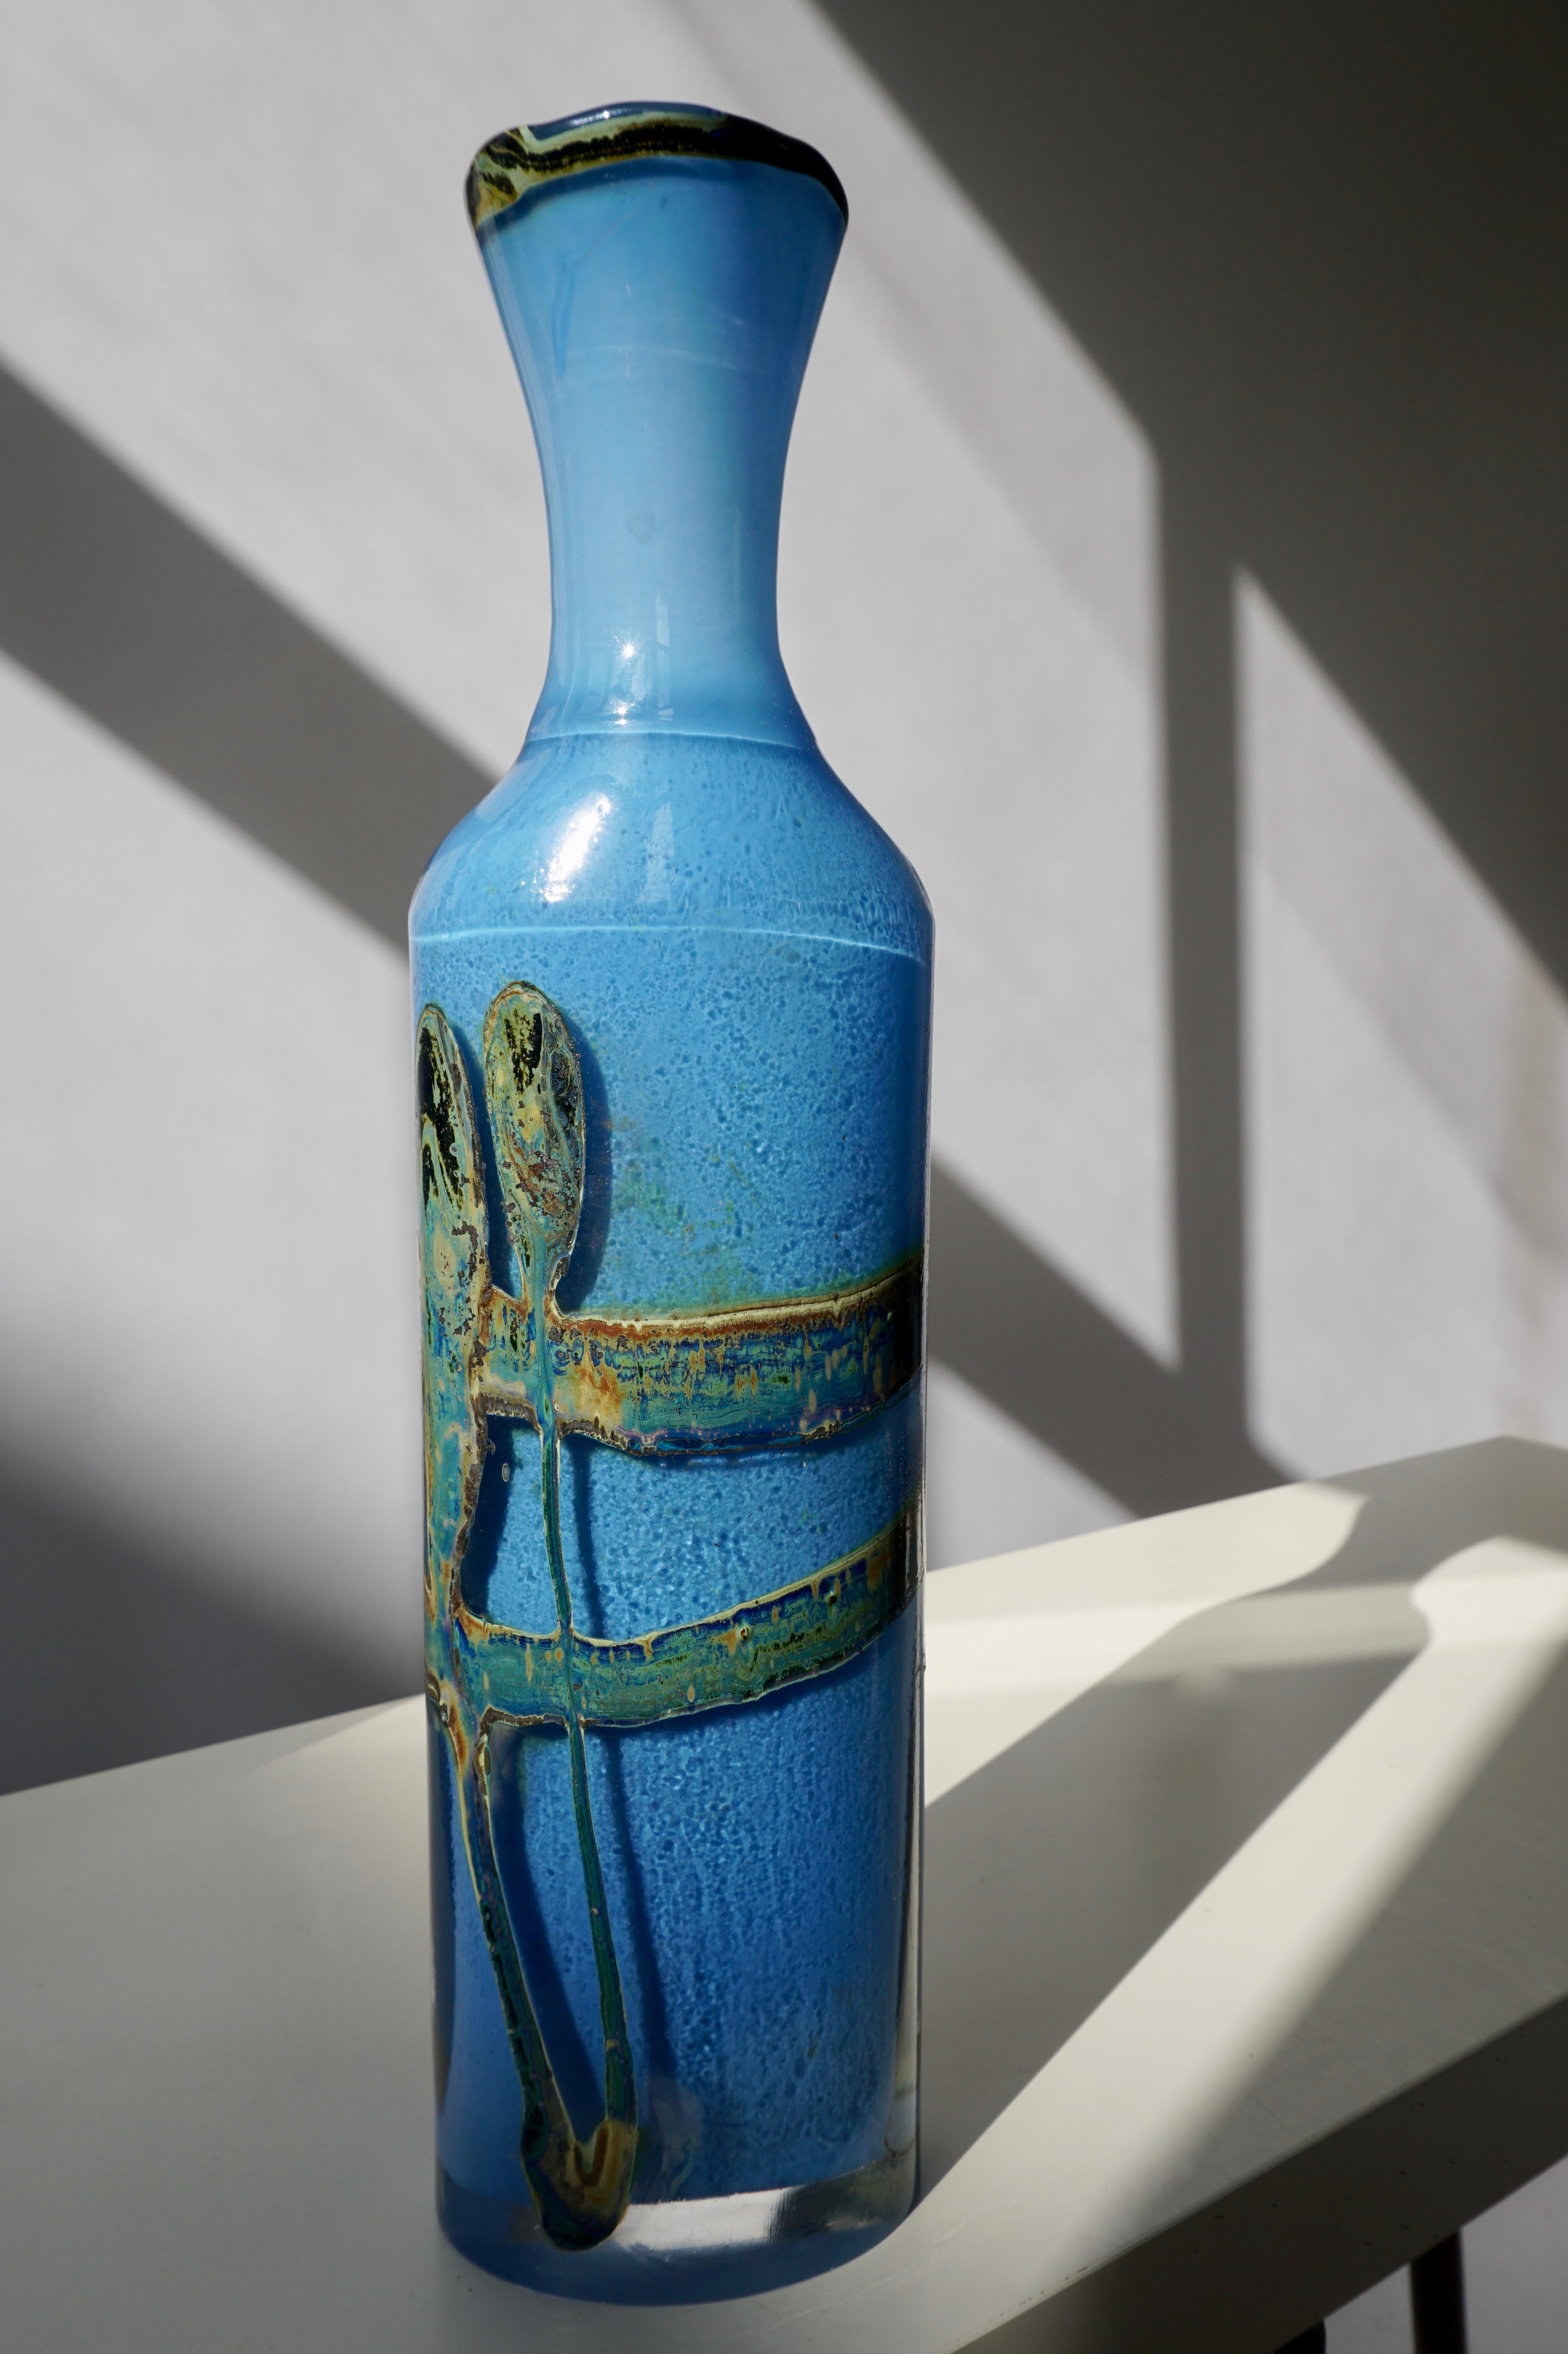 Rare et grand vase de Val St. Lambert en verre d'art. Les couleurs acidulées en font une pièce très contemporaine.
Val-Saint-Lambert est un fabricant belge très réputé d'articles en cristal haut de gamme.
Mesures : Hauteur 44 cm.
Largeur 12